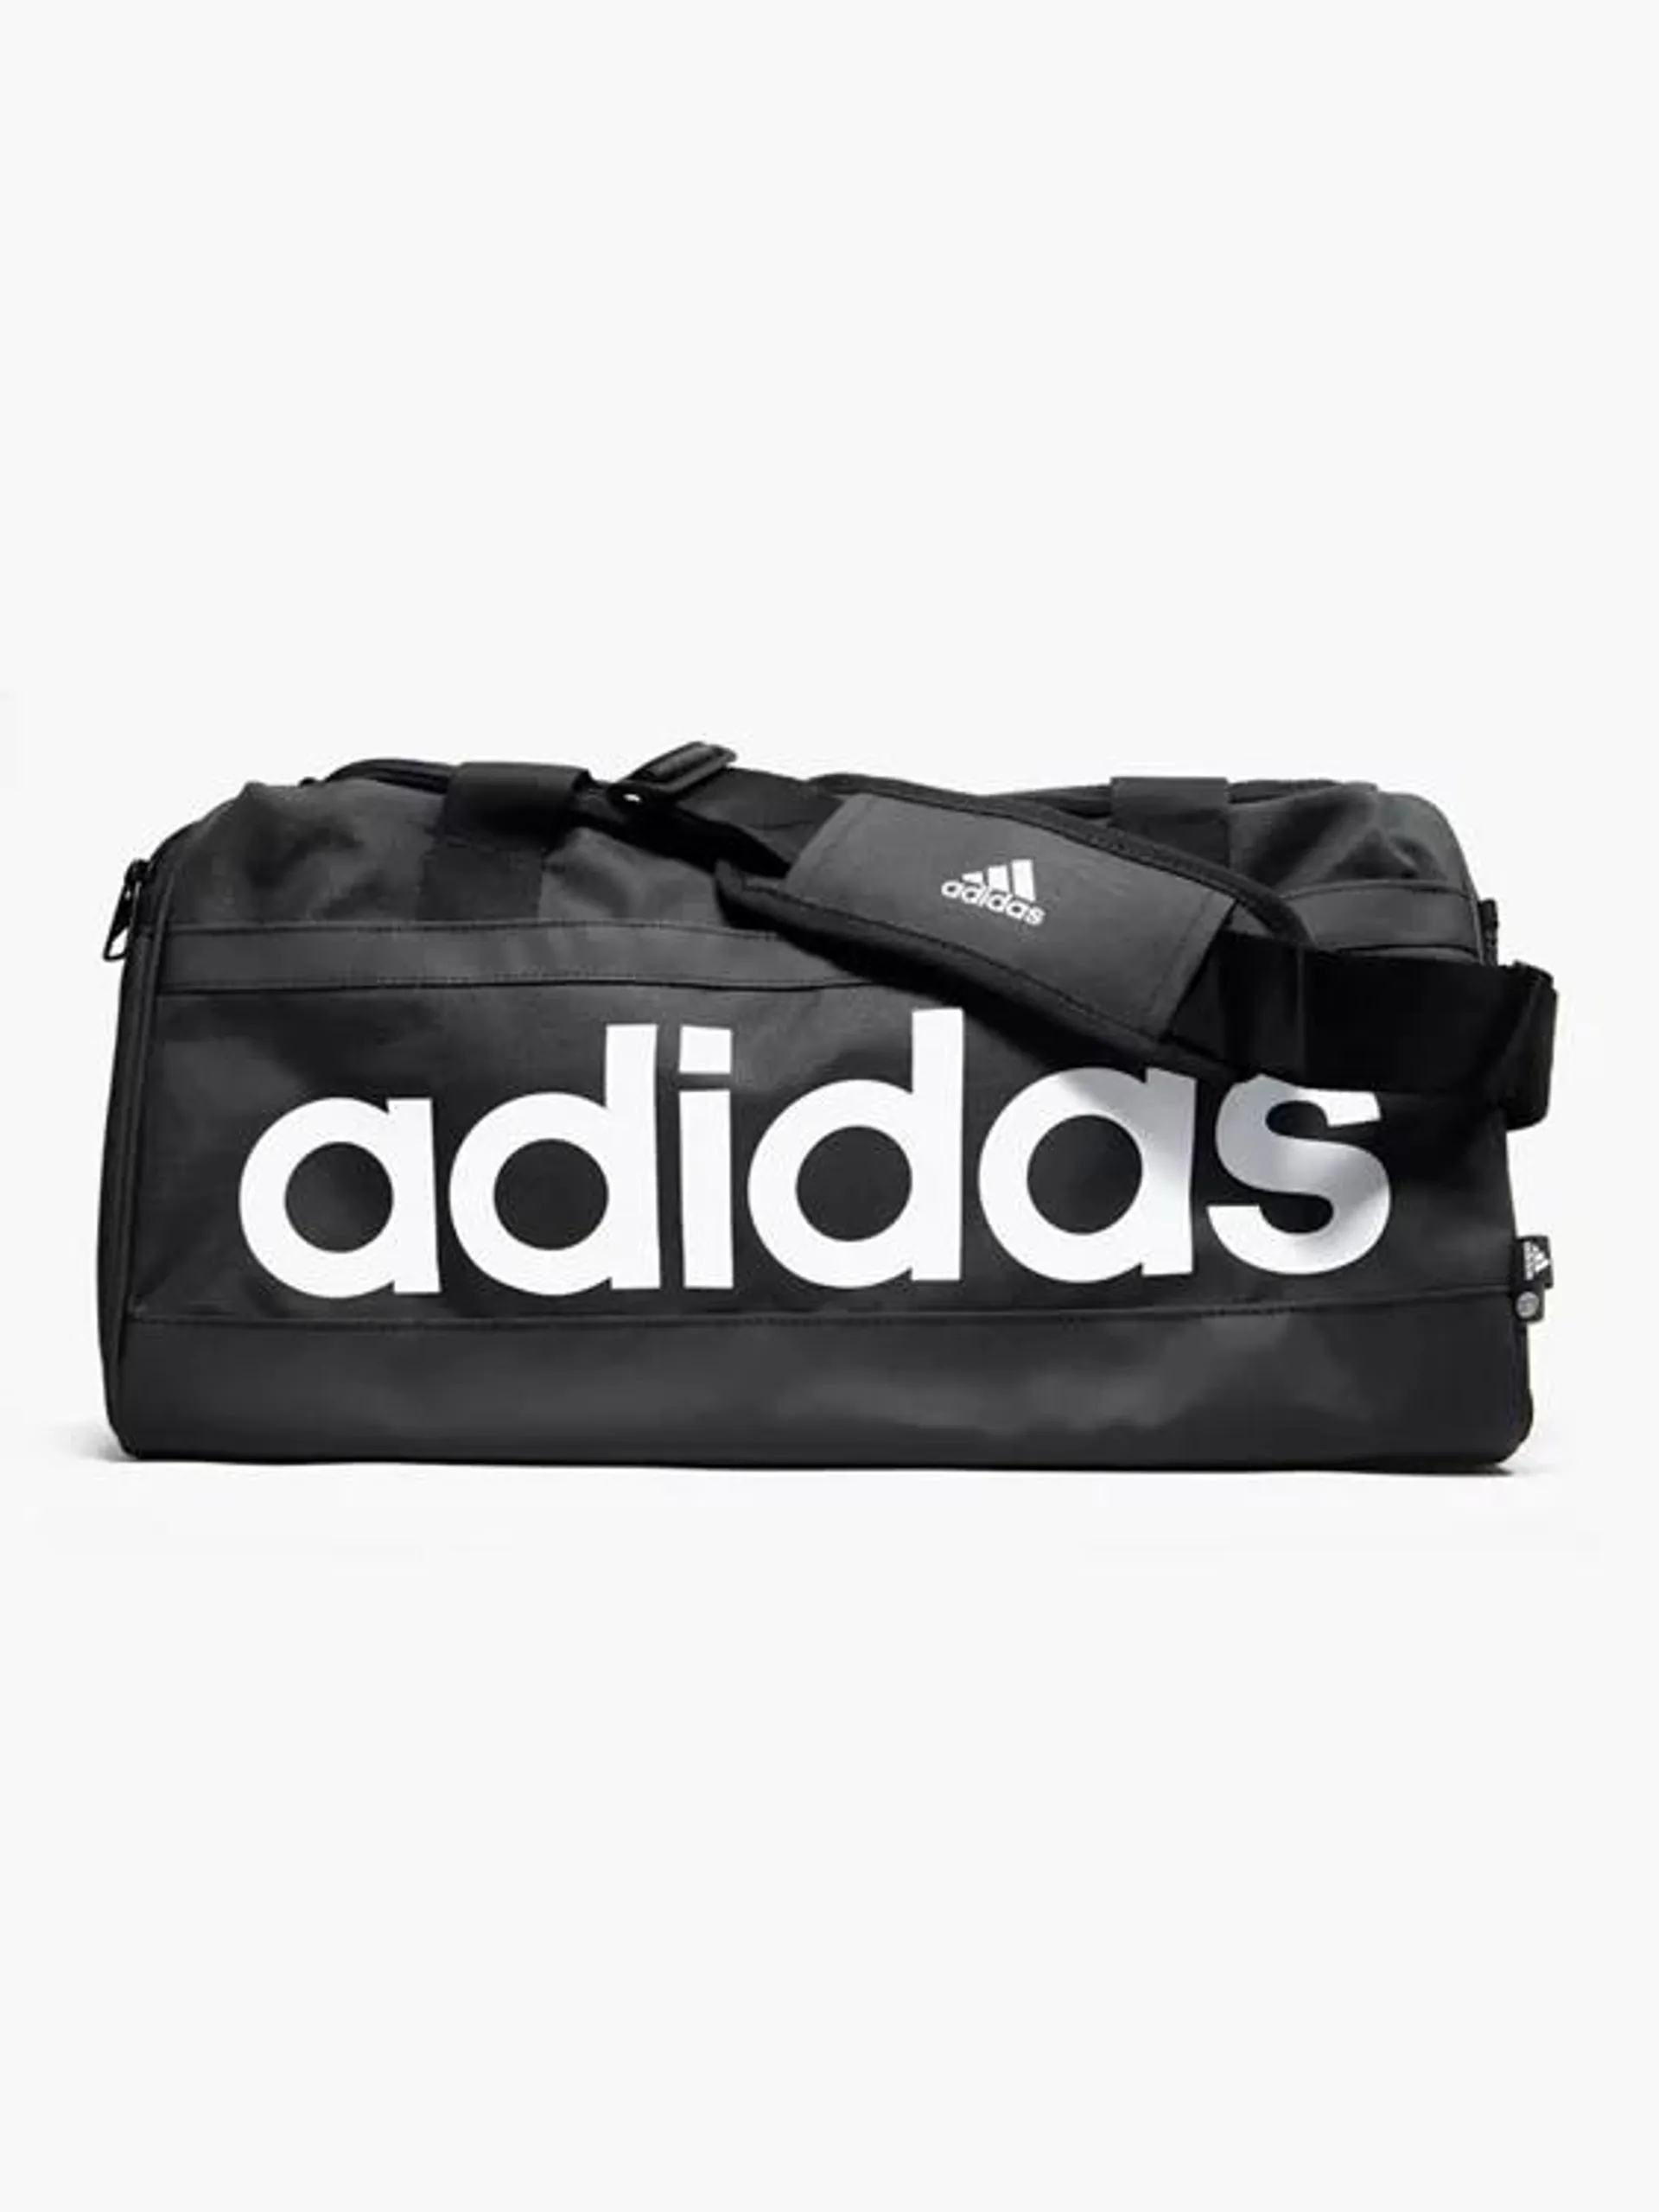 Adidas Black Duffle Bag